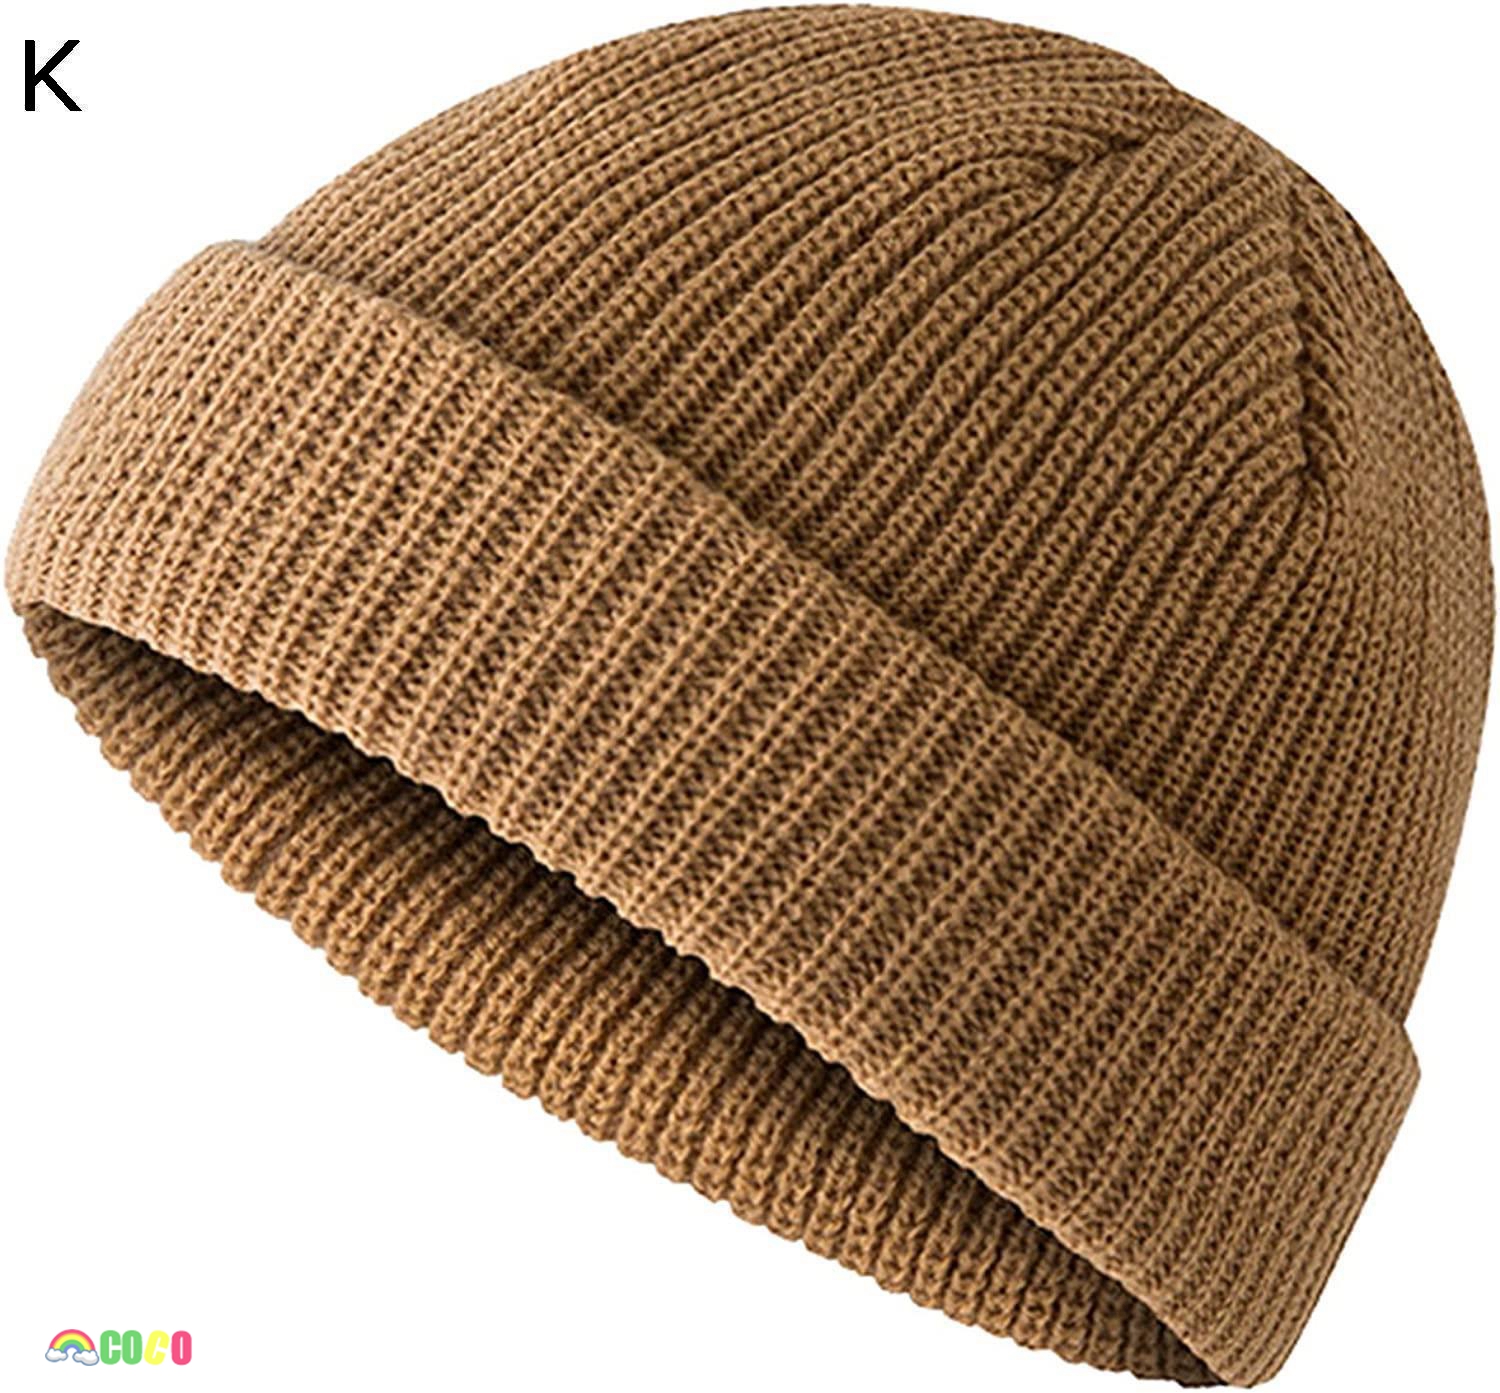 ニット帽 メンズ 秋 冬 肌に優しい 軽くて暖かいの素材 大きいサイズ 防寒帽子 大きいサイズ 厚手...